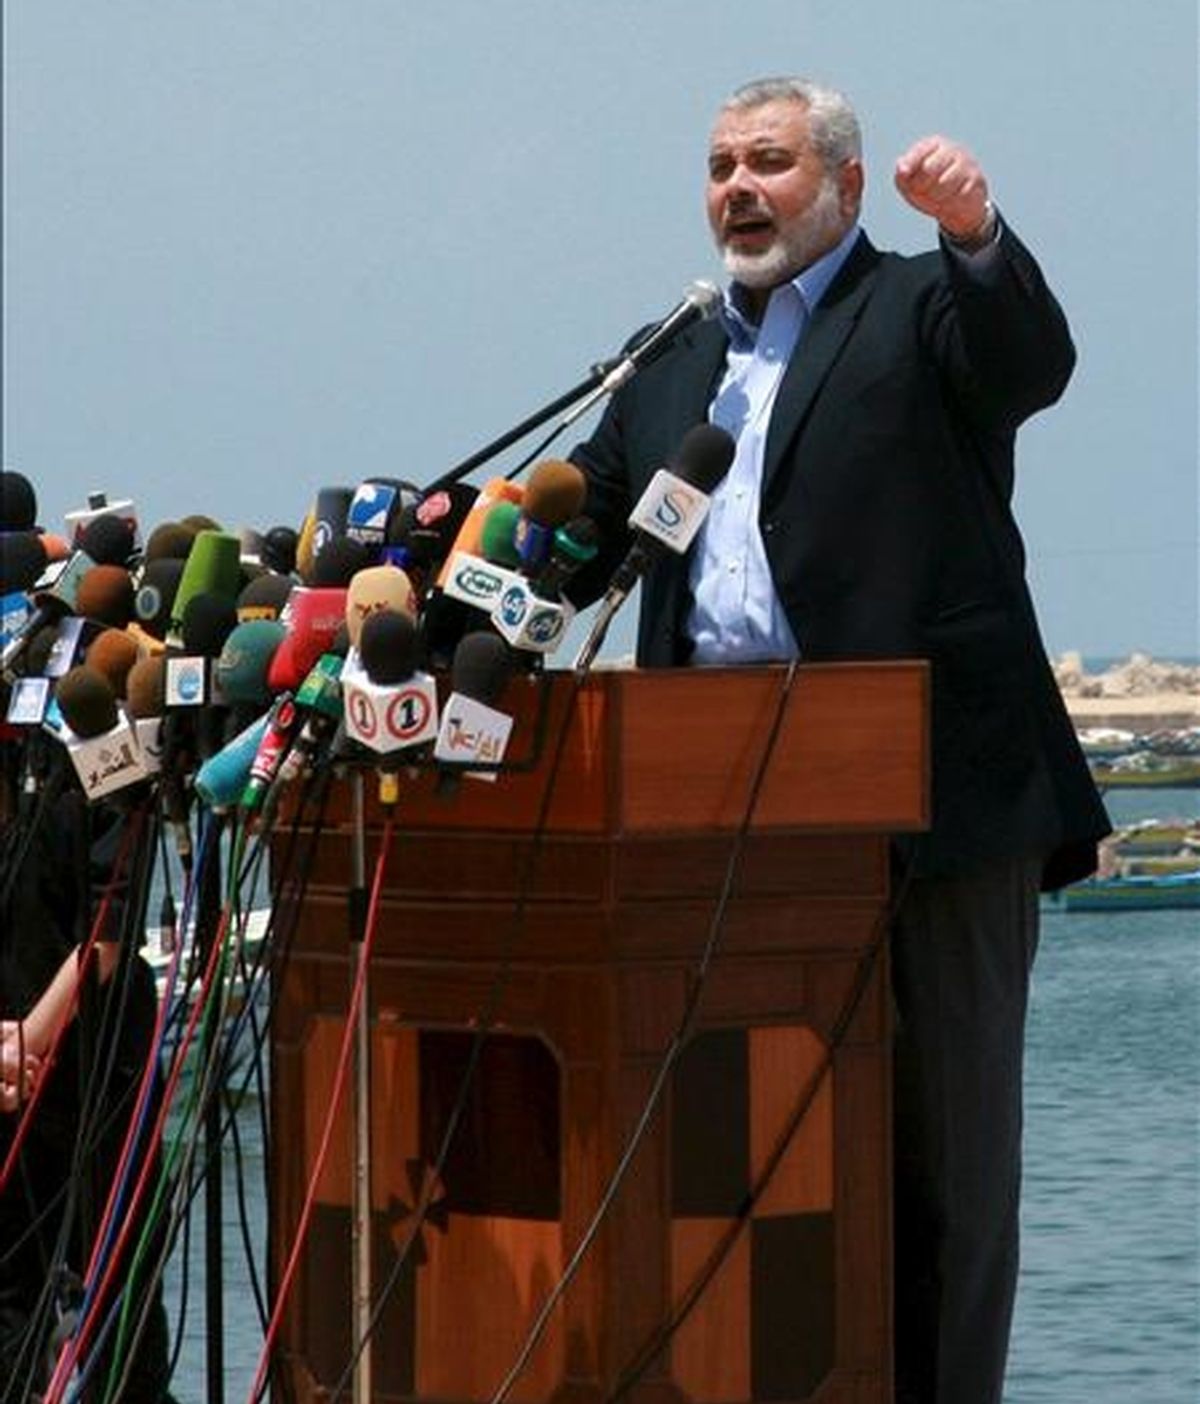 El jefe del Gobierno de Hamás en Gaza, Ismail Haniye, pronuncia un discurso durante su visita al puerto de Gaza antes de la llegada de la "Flotilla de la Libertad", en mayo pasado. La hija de Haniye ha decidido poner a su hijo recién nacido, el nombre de "Recep Tayip Erdogán", en agradecimiento al primer ministro turco. EFE/Archivo